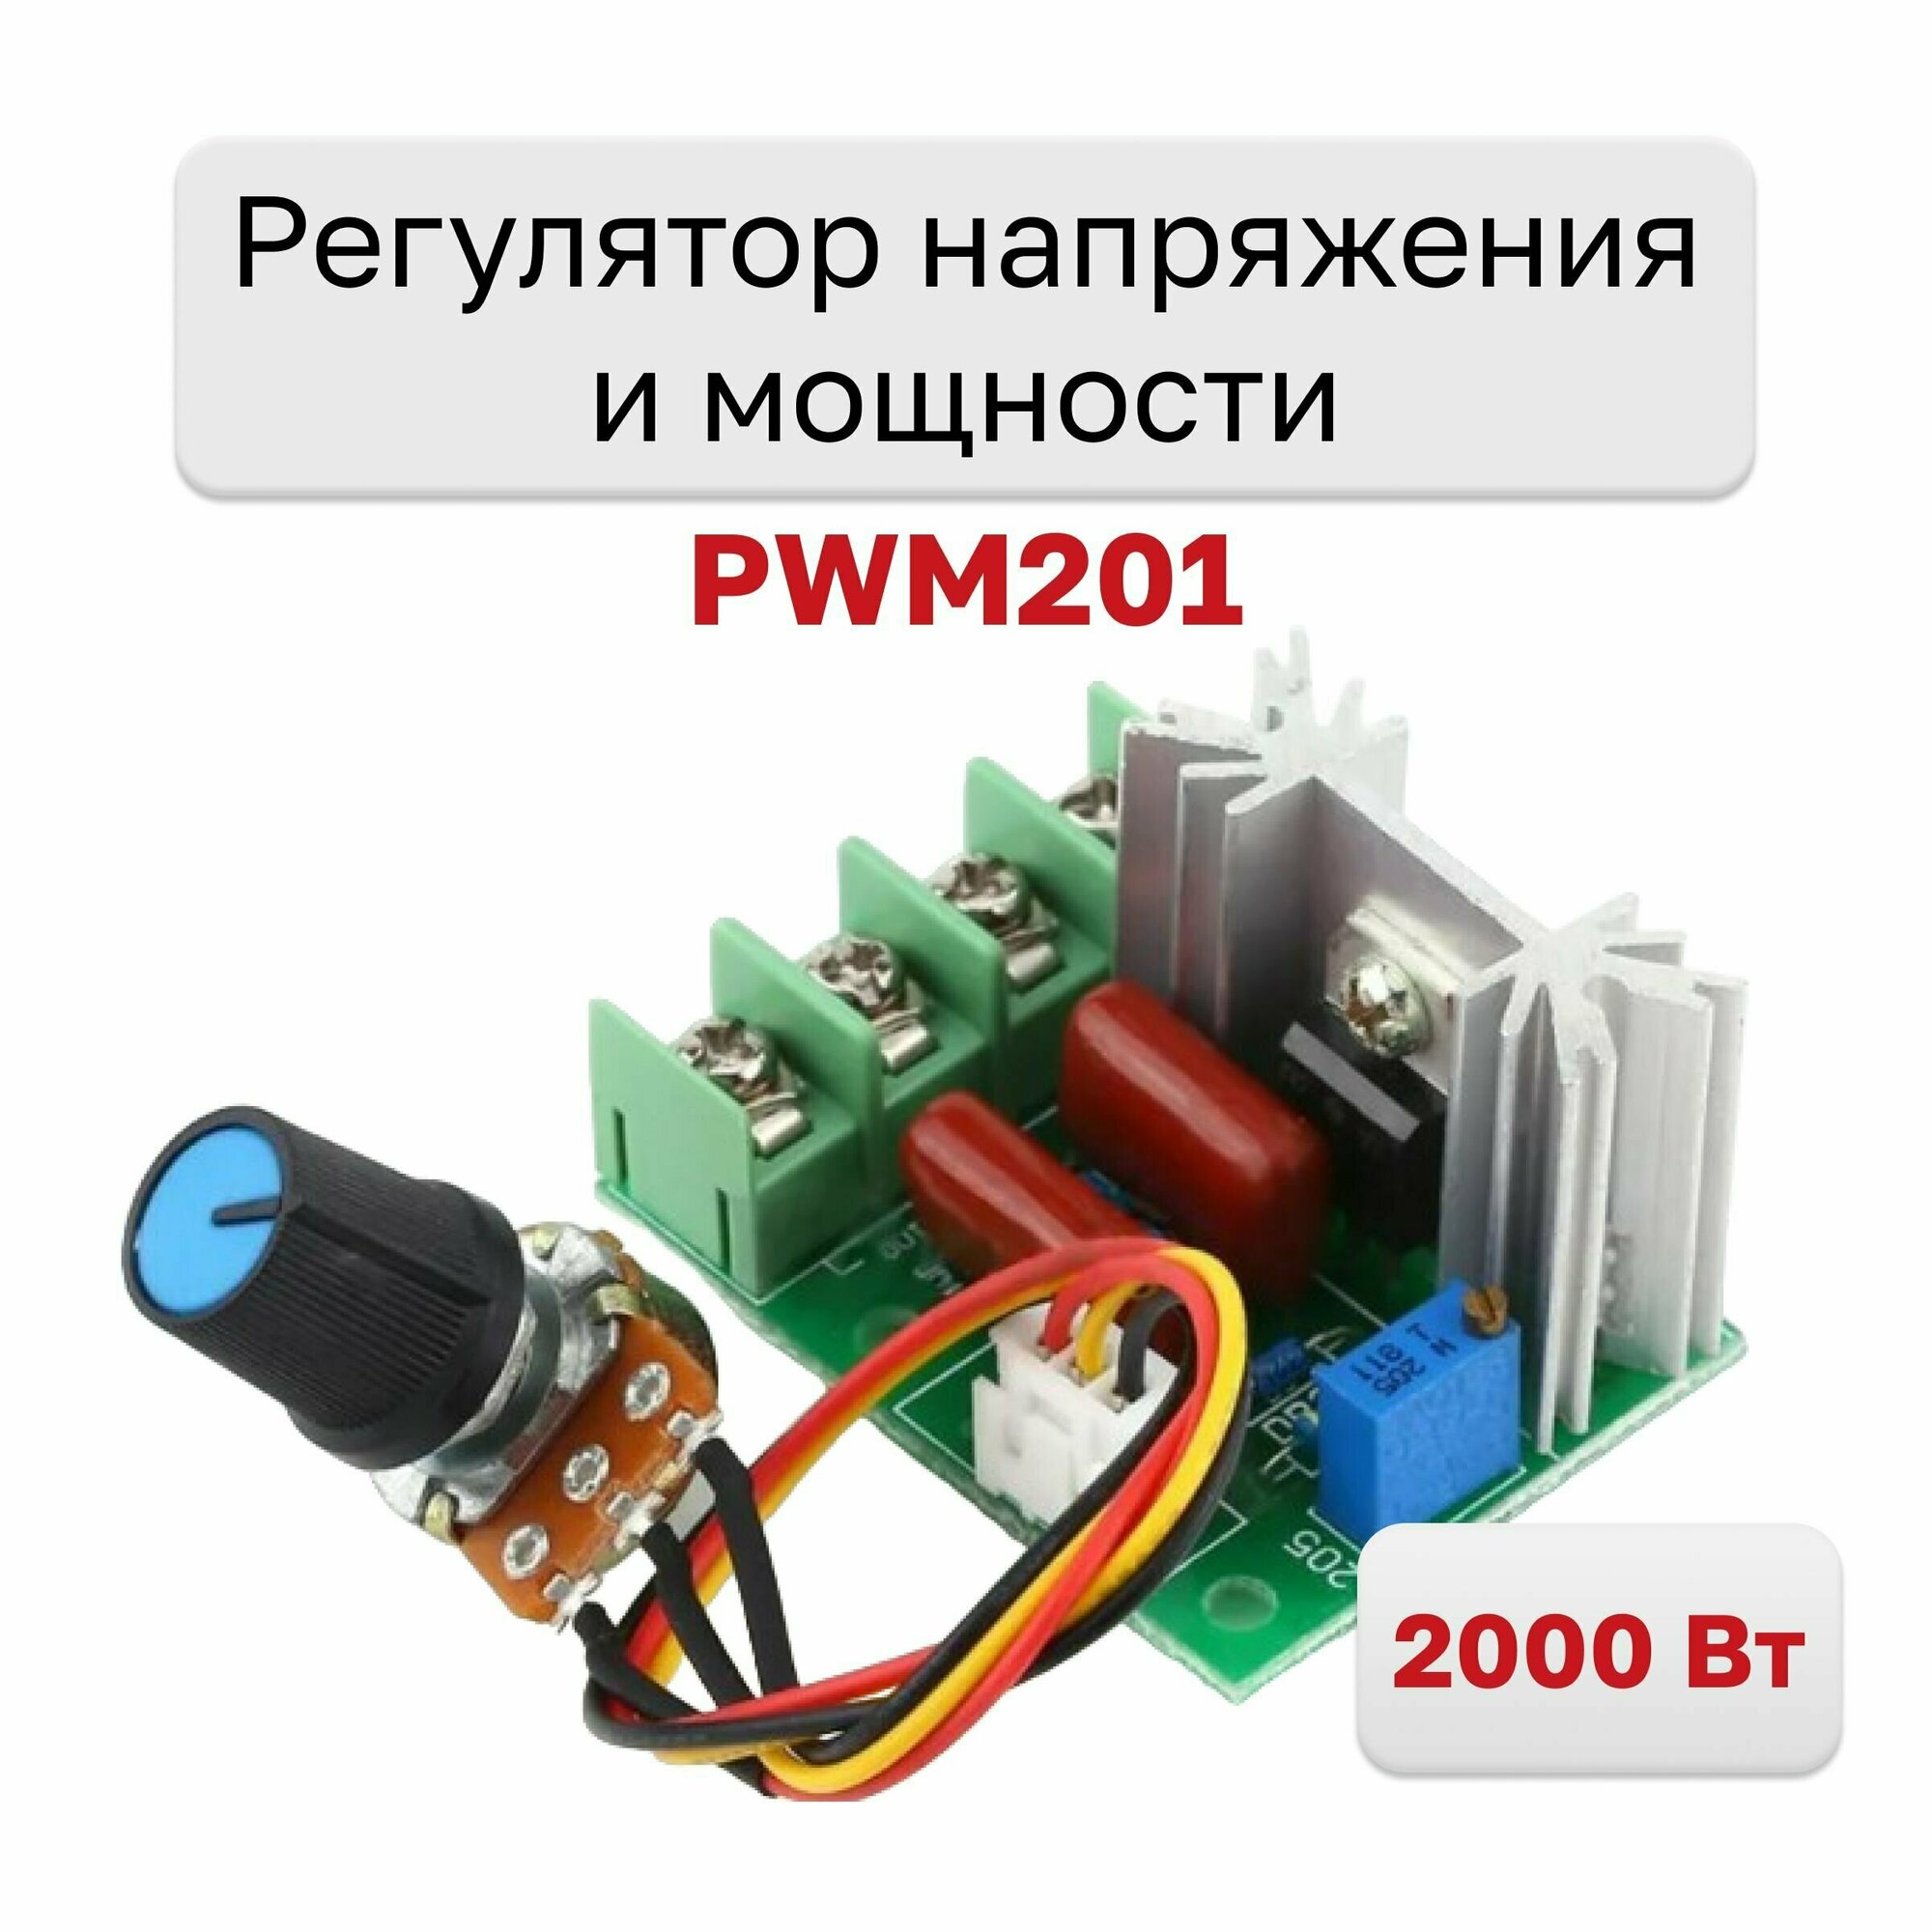 PWM201, Регулятор напряжения и мощности 220В 2000Вт